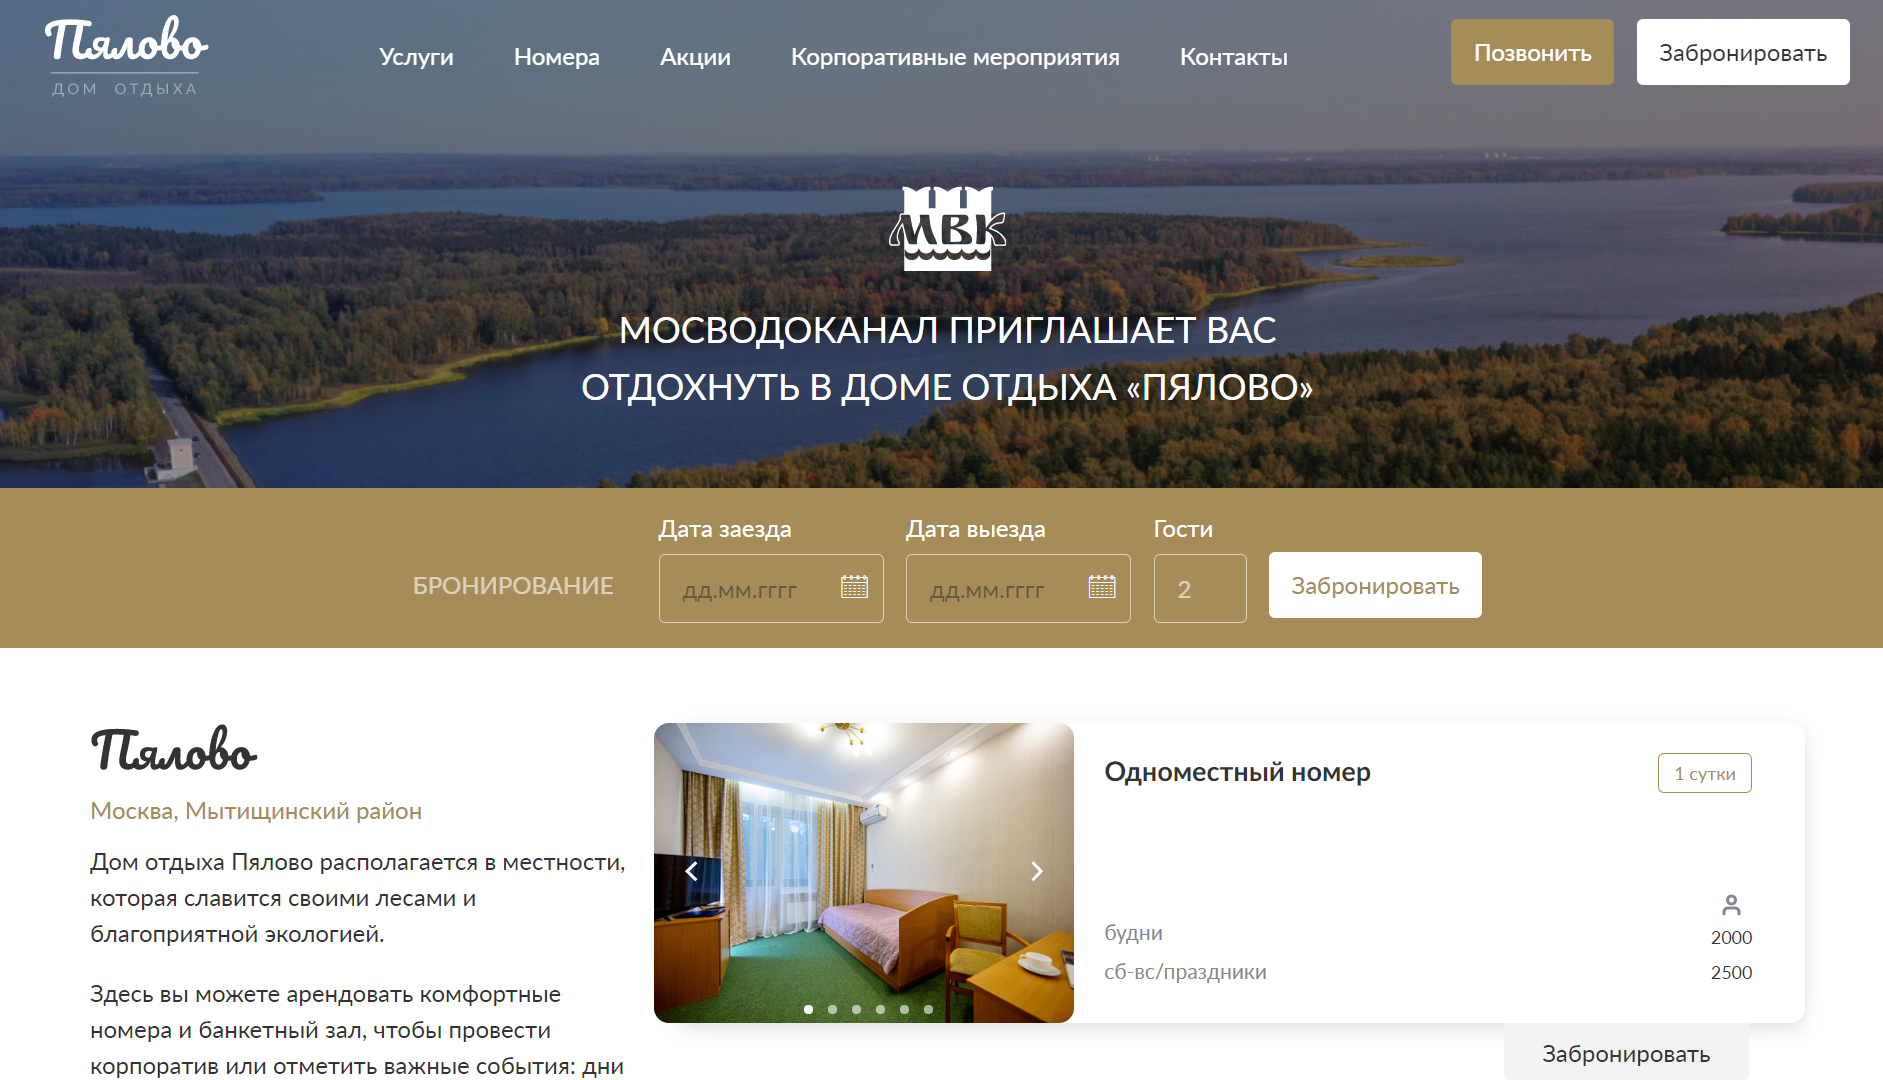 разработка сайта для дома отдыха «пялово» (ао «мосводоканал»)